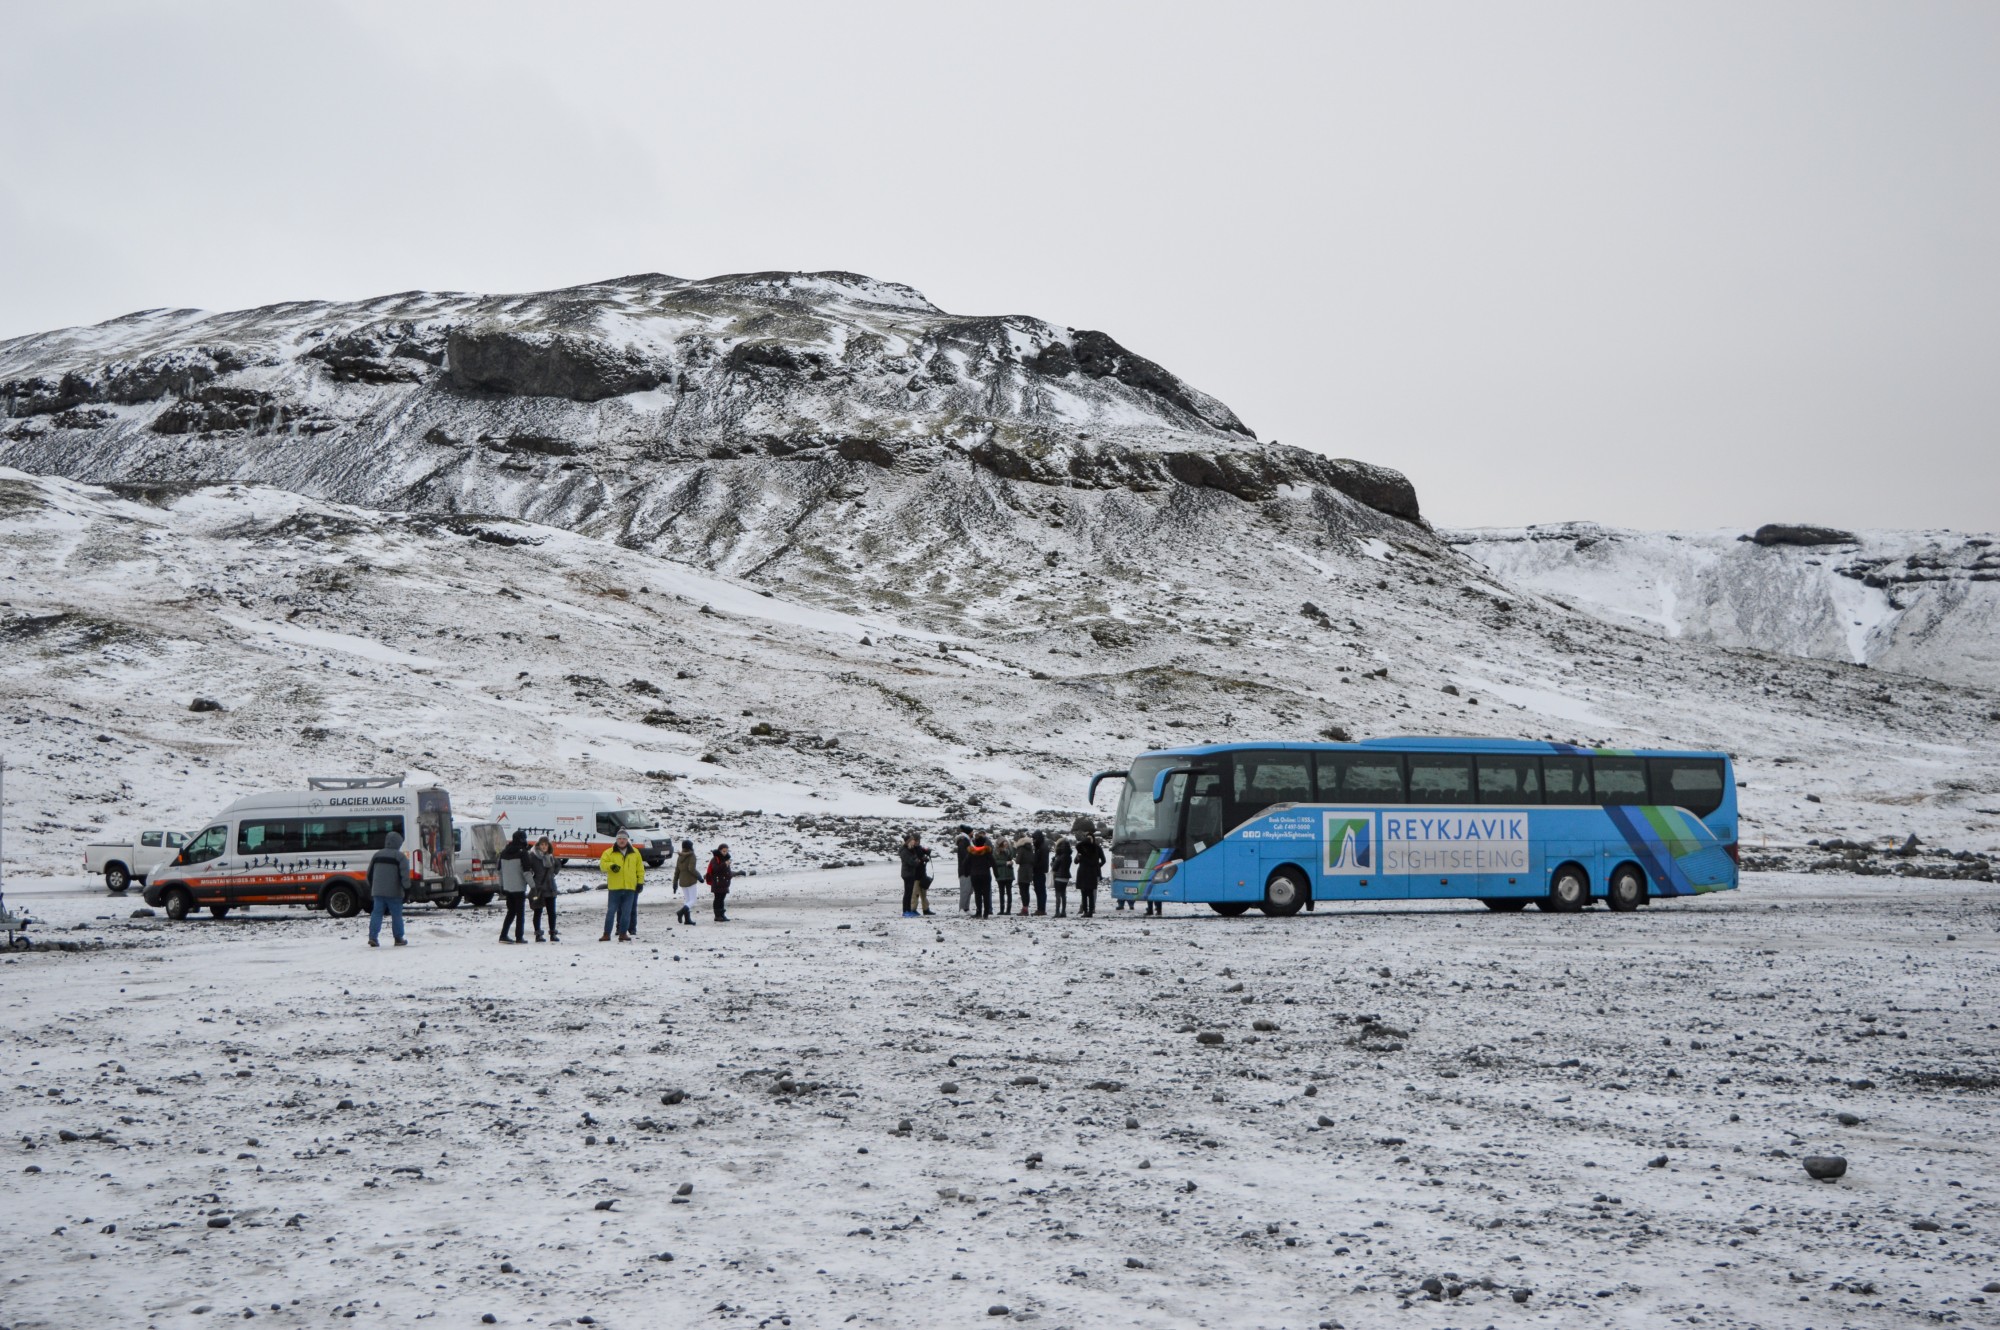 Sólheimajökull Glacier In Iceland